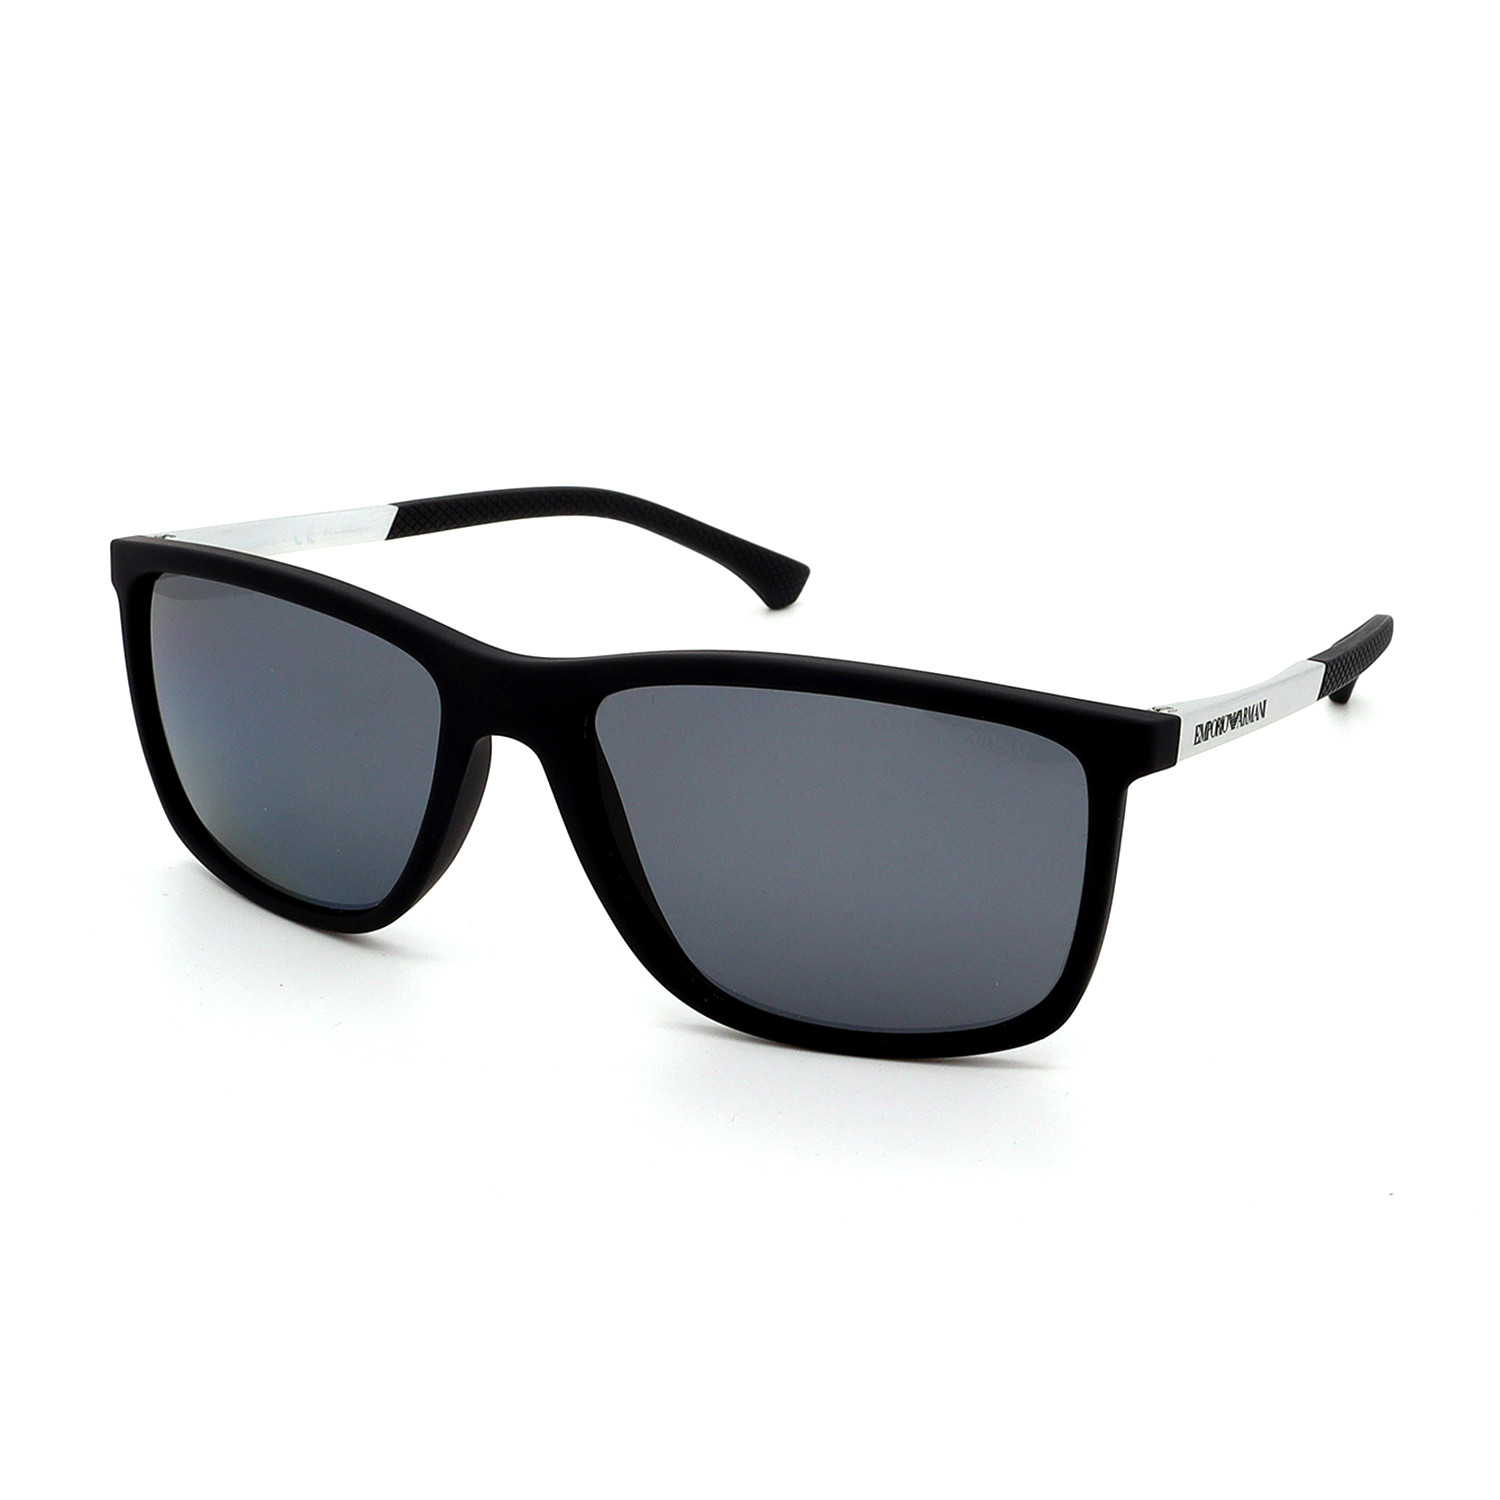 Emporio Armani // Men's EA4058-506381 Polarized Sunglasses // Black ...